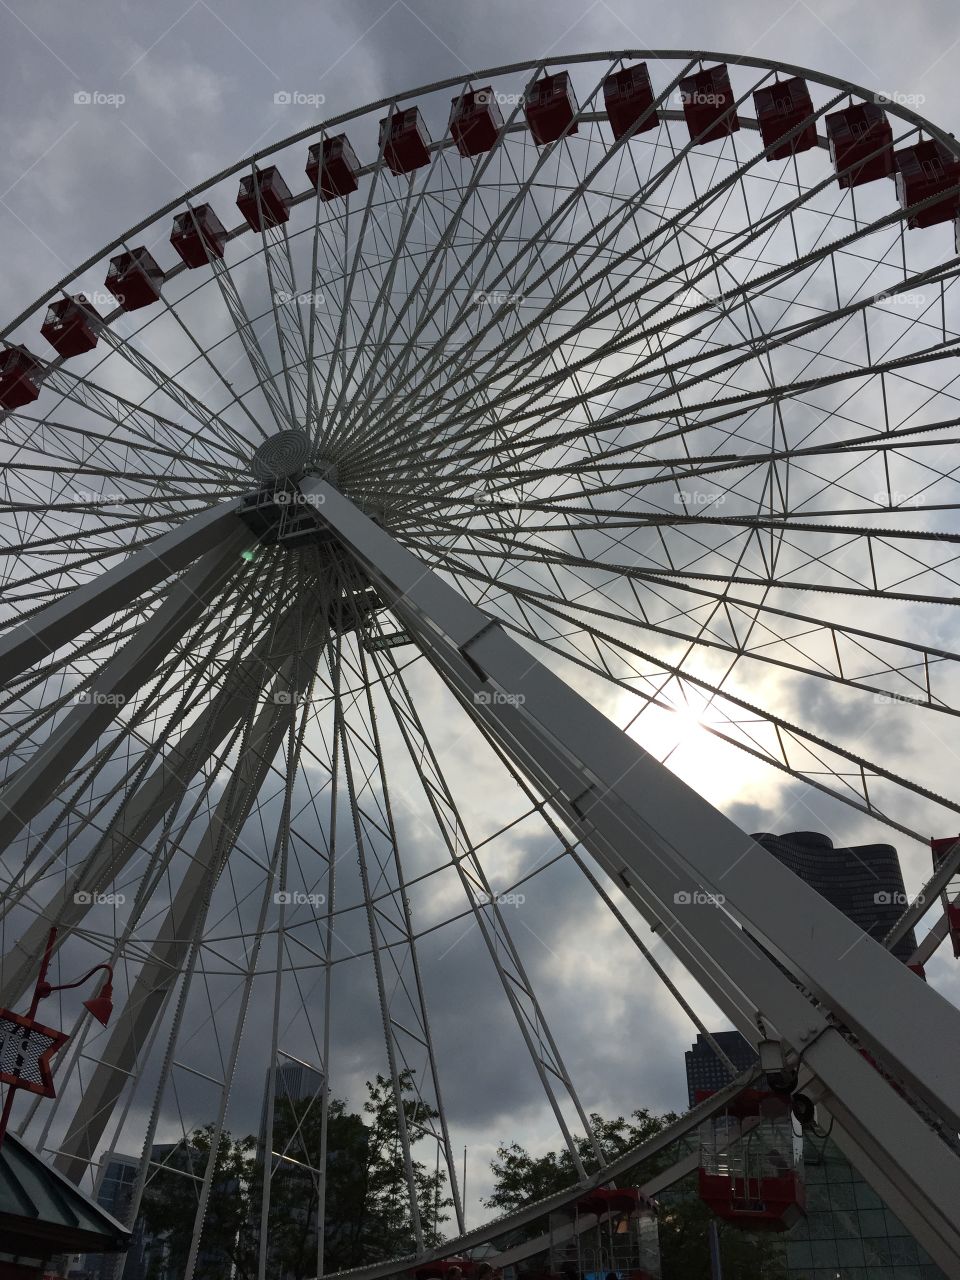 Steel Around. Navy Pier Ferris Wheel, Chicago, Illinois, August 2015